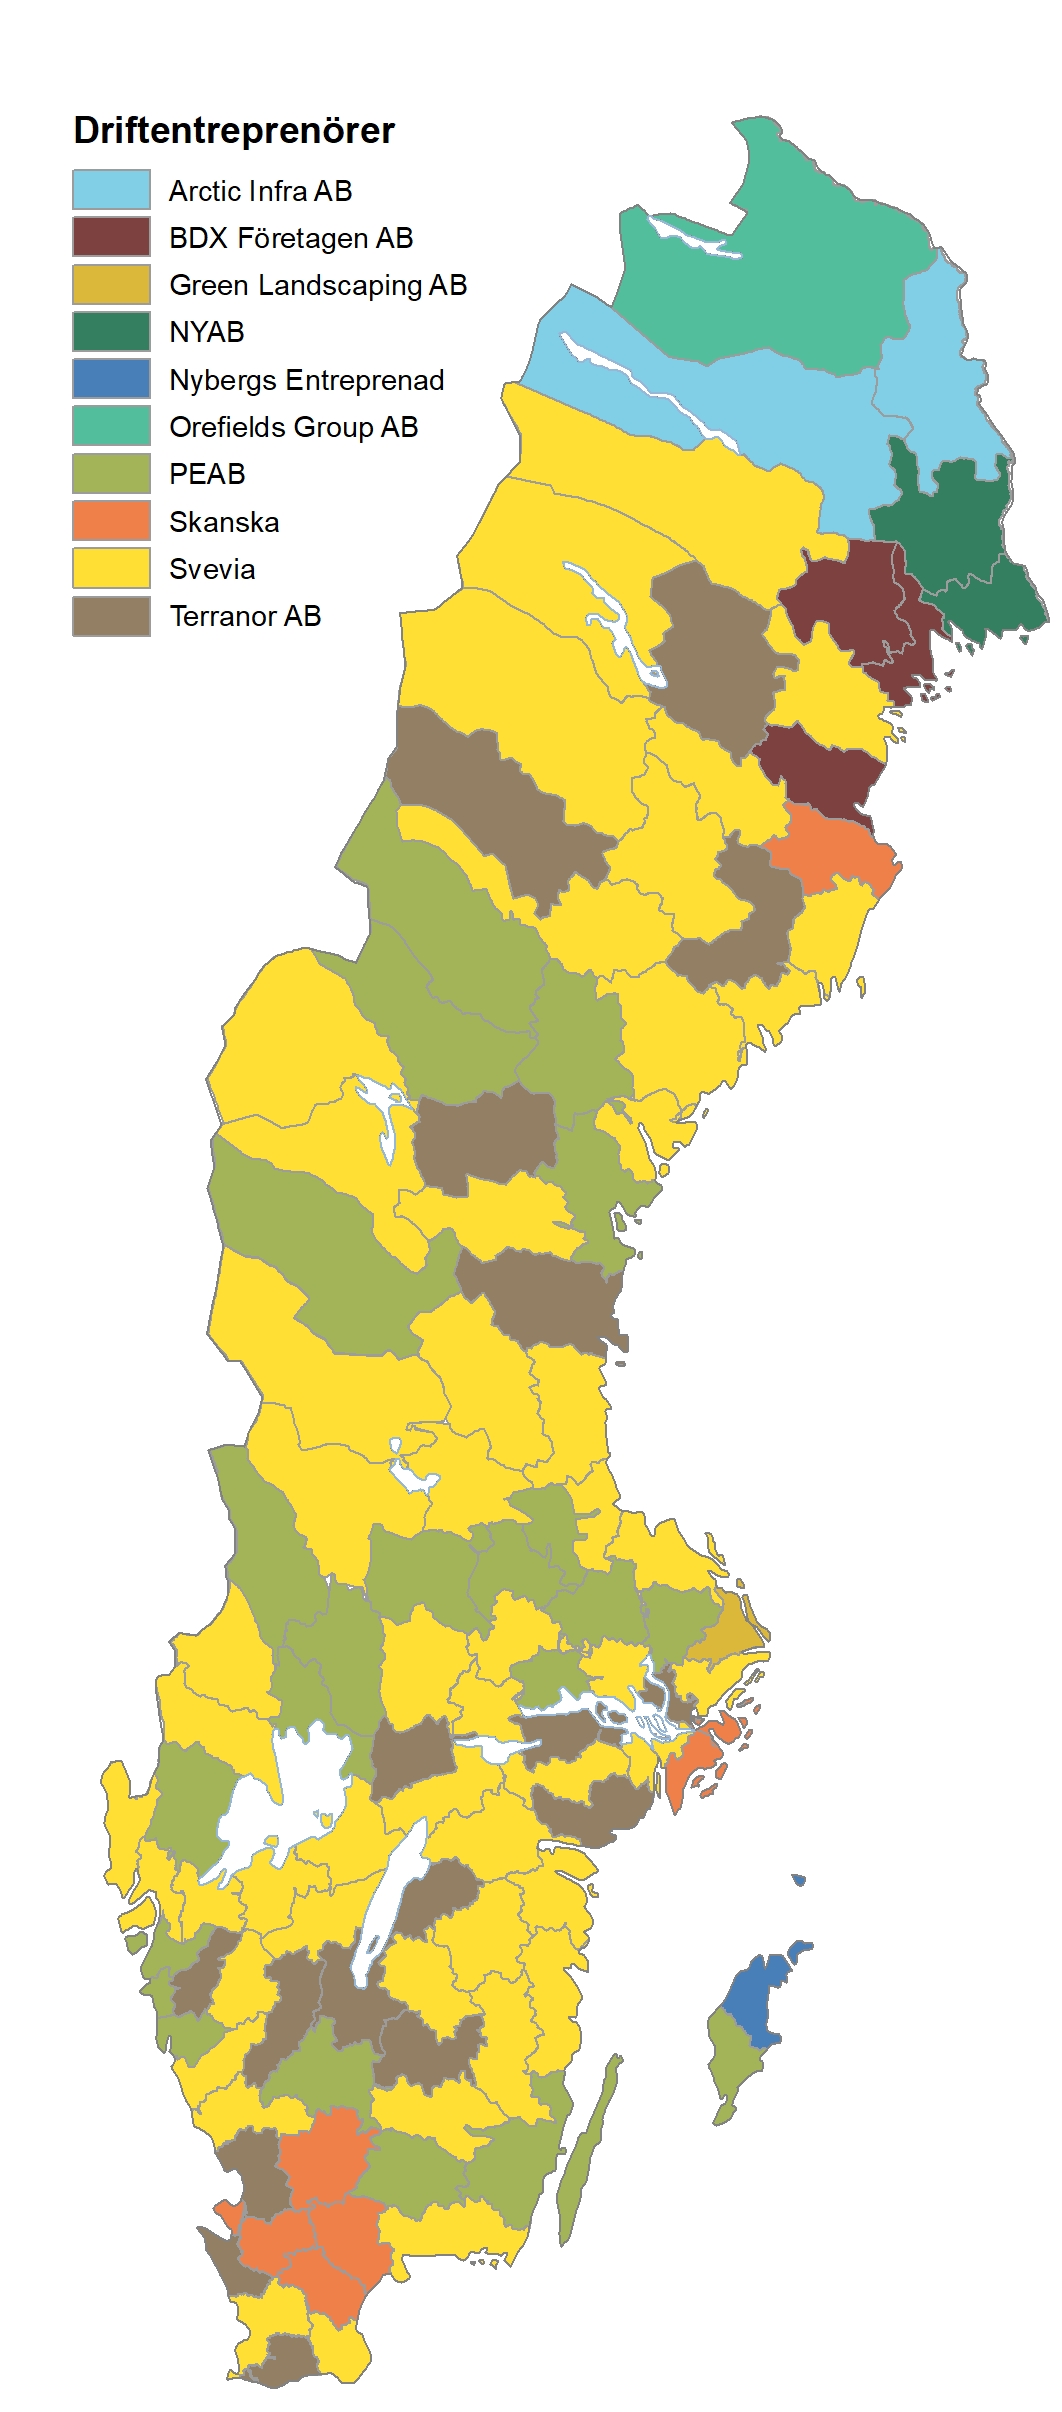 Kartbild över Sverige och fördelningen av driftentreprenörer vägar.